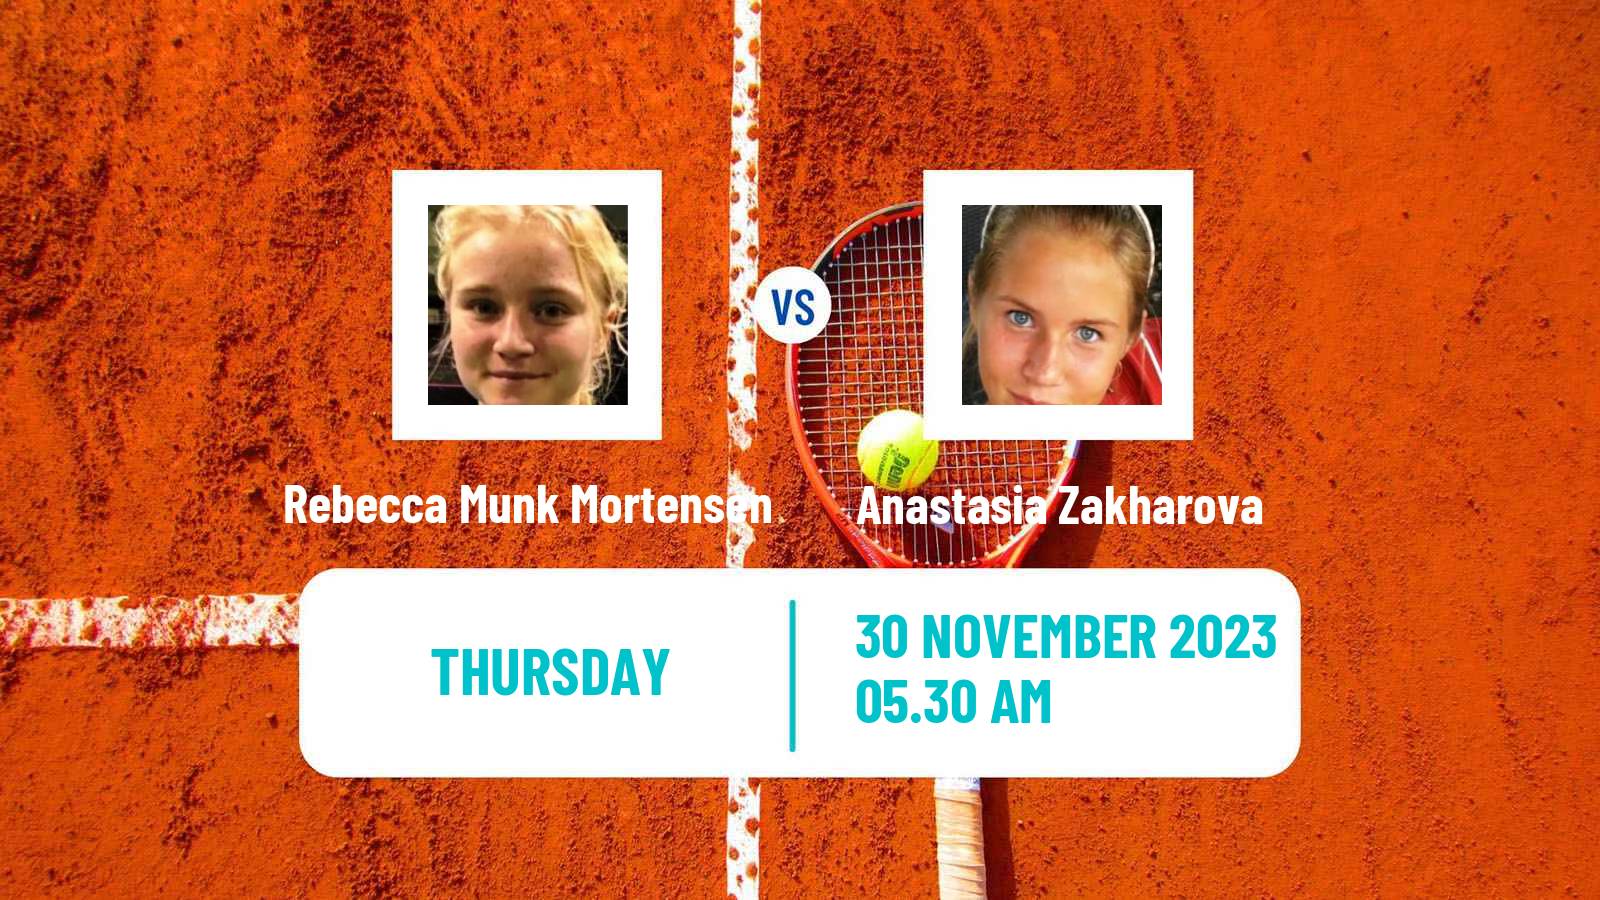 Tennis ITF W25 Limassol 2 Women Rebecca Munk Mortensen - Anastasia Zakharova